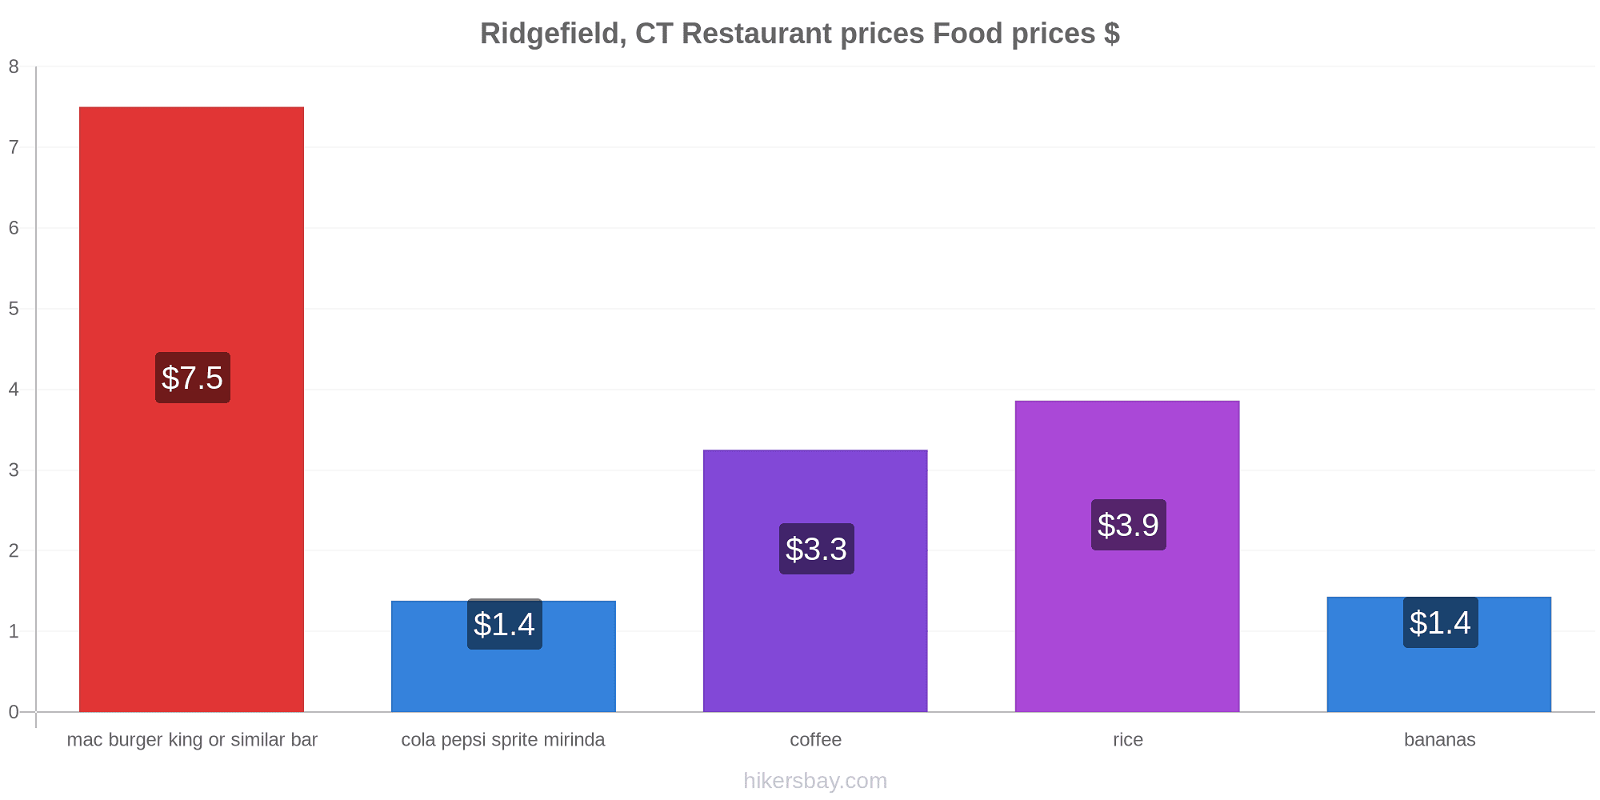 Ridgefield, CT price changes hikersbay.com